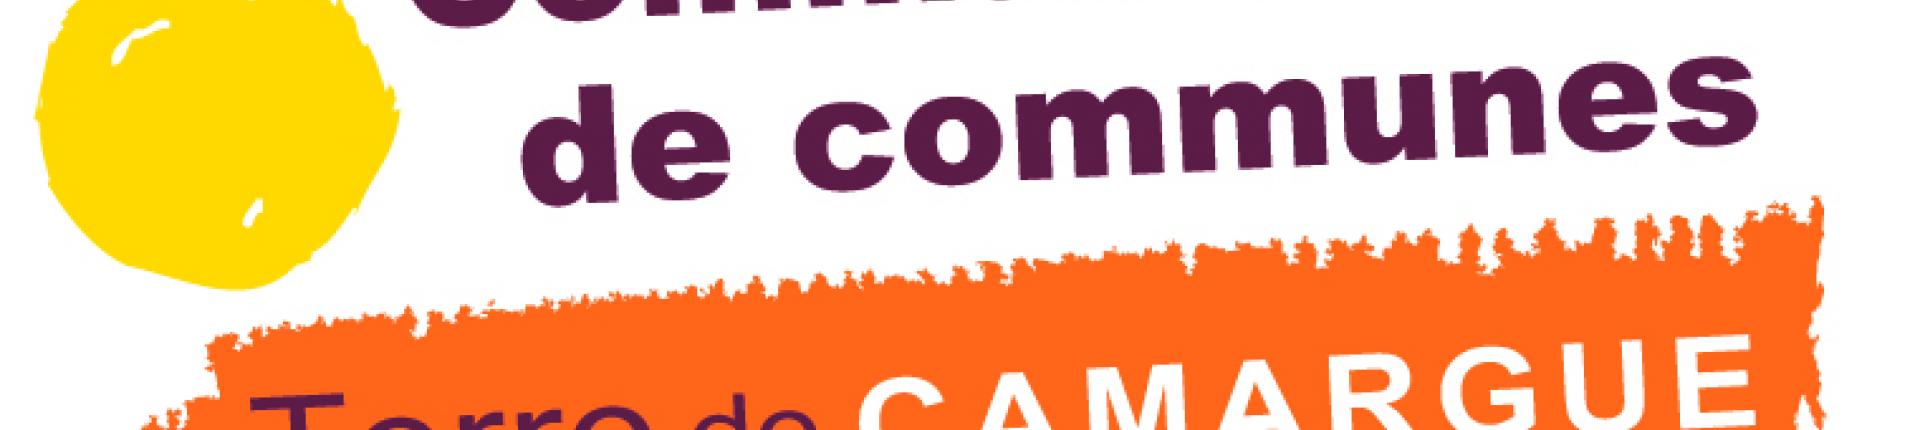 Logo de la communauté de communes Terre de Camargue